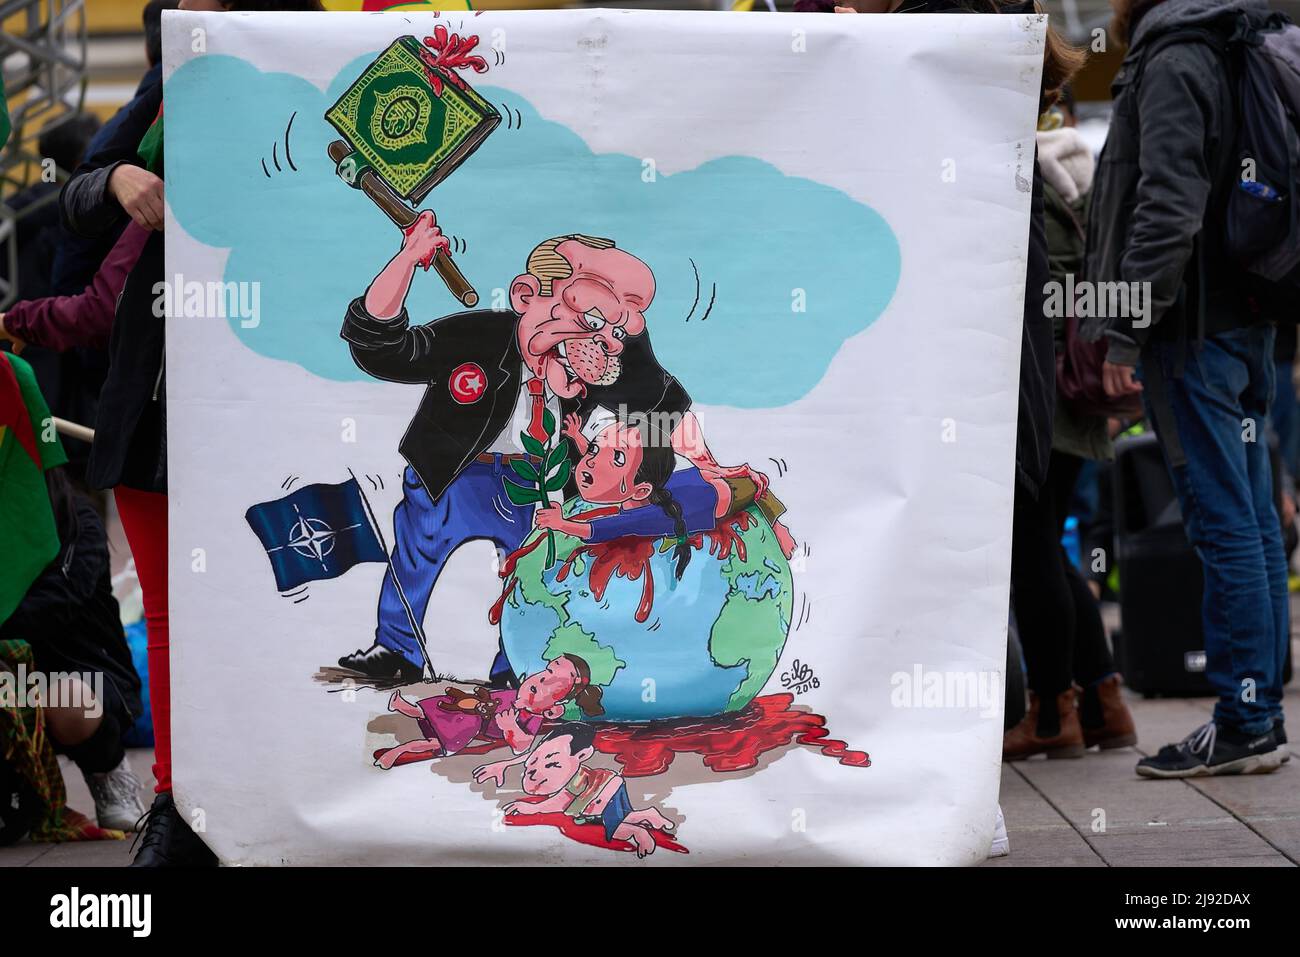 Helsinki, Finlande - 12 octobre 2019 : affiche présentant le président turc Recep Tayyip Erdogan et un drapeau de l'OTAN lors d'un rassemblement pacifique dans le centre-ville d'Helsinki Banque D'Images